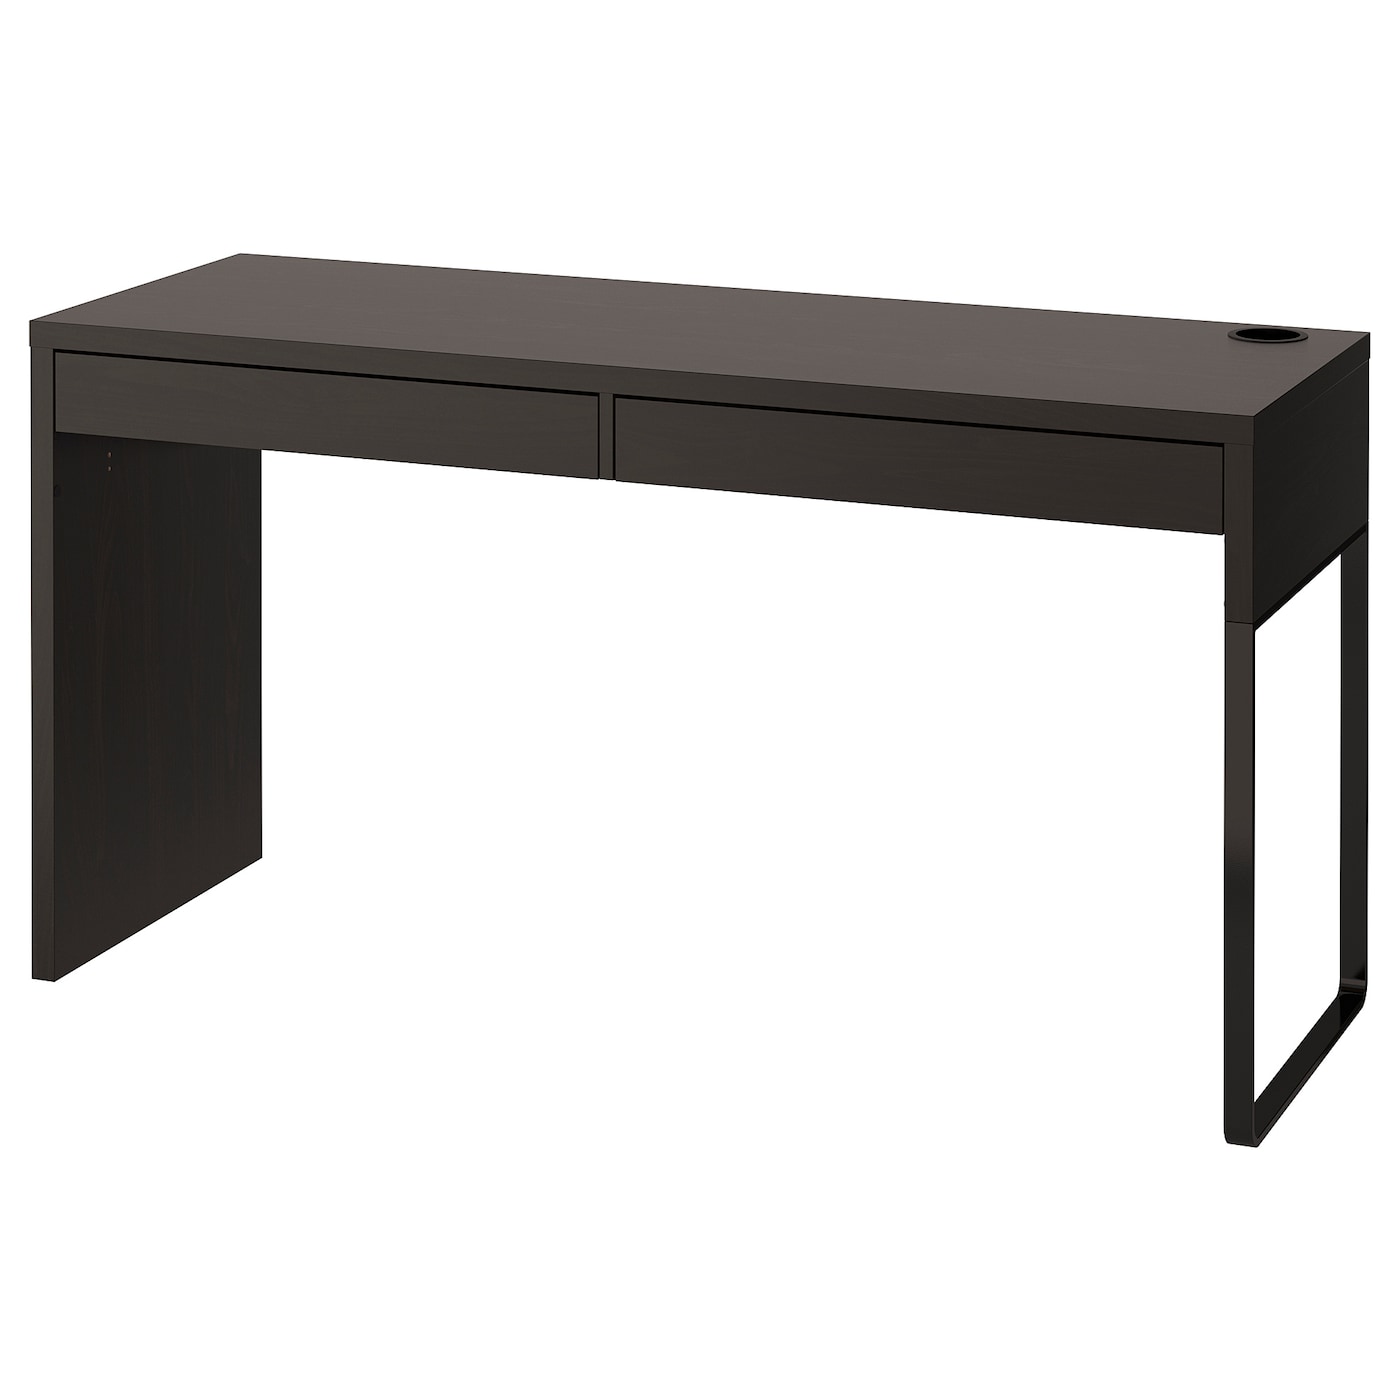 Письменный стол с ящиками - IKEA MICKE, 142x50 см,  черно-коричневый, МИККЕ ИКЕА